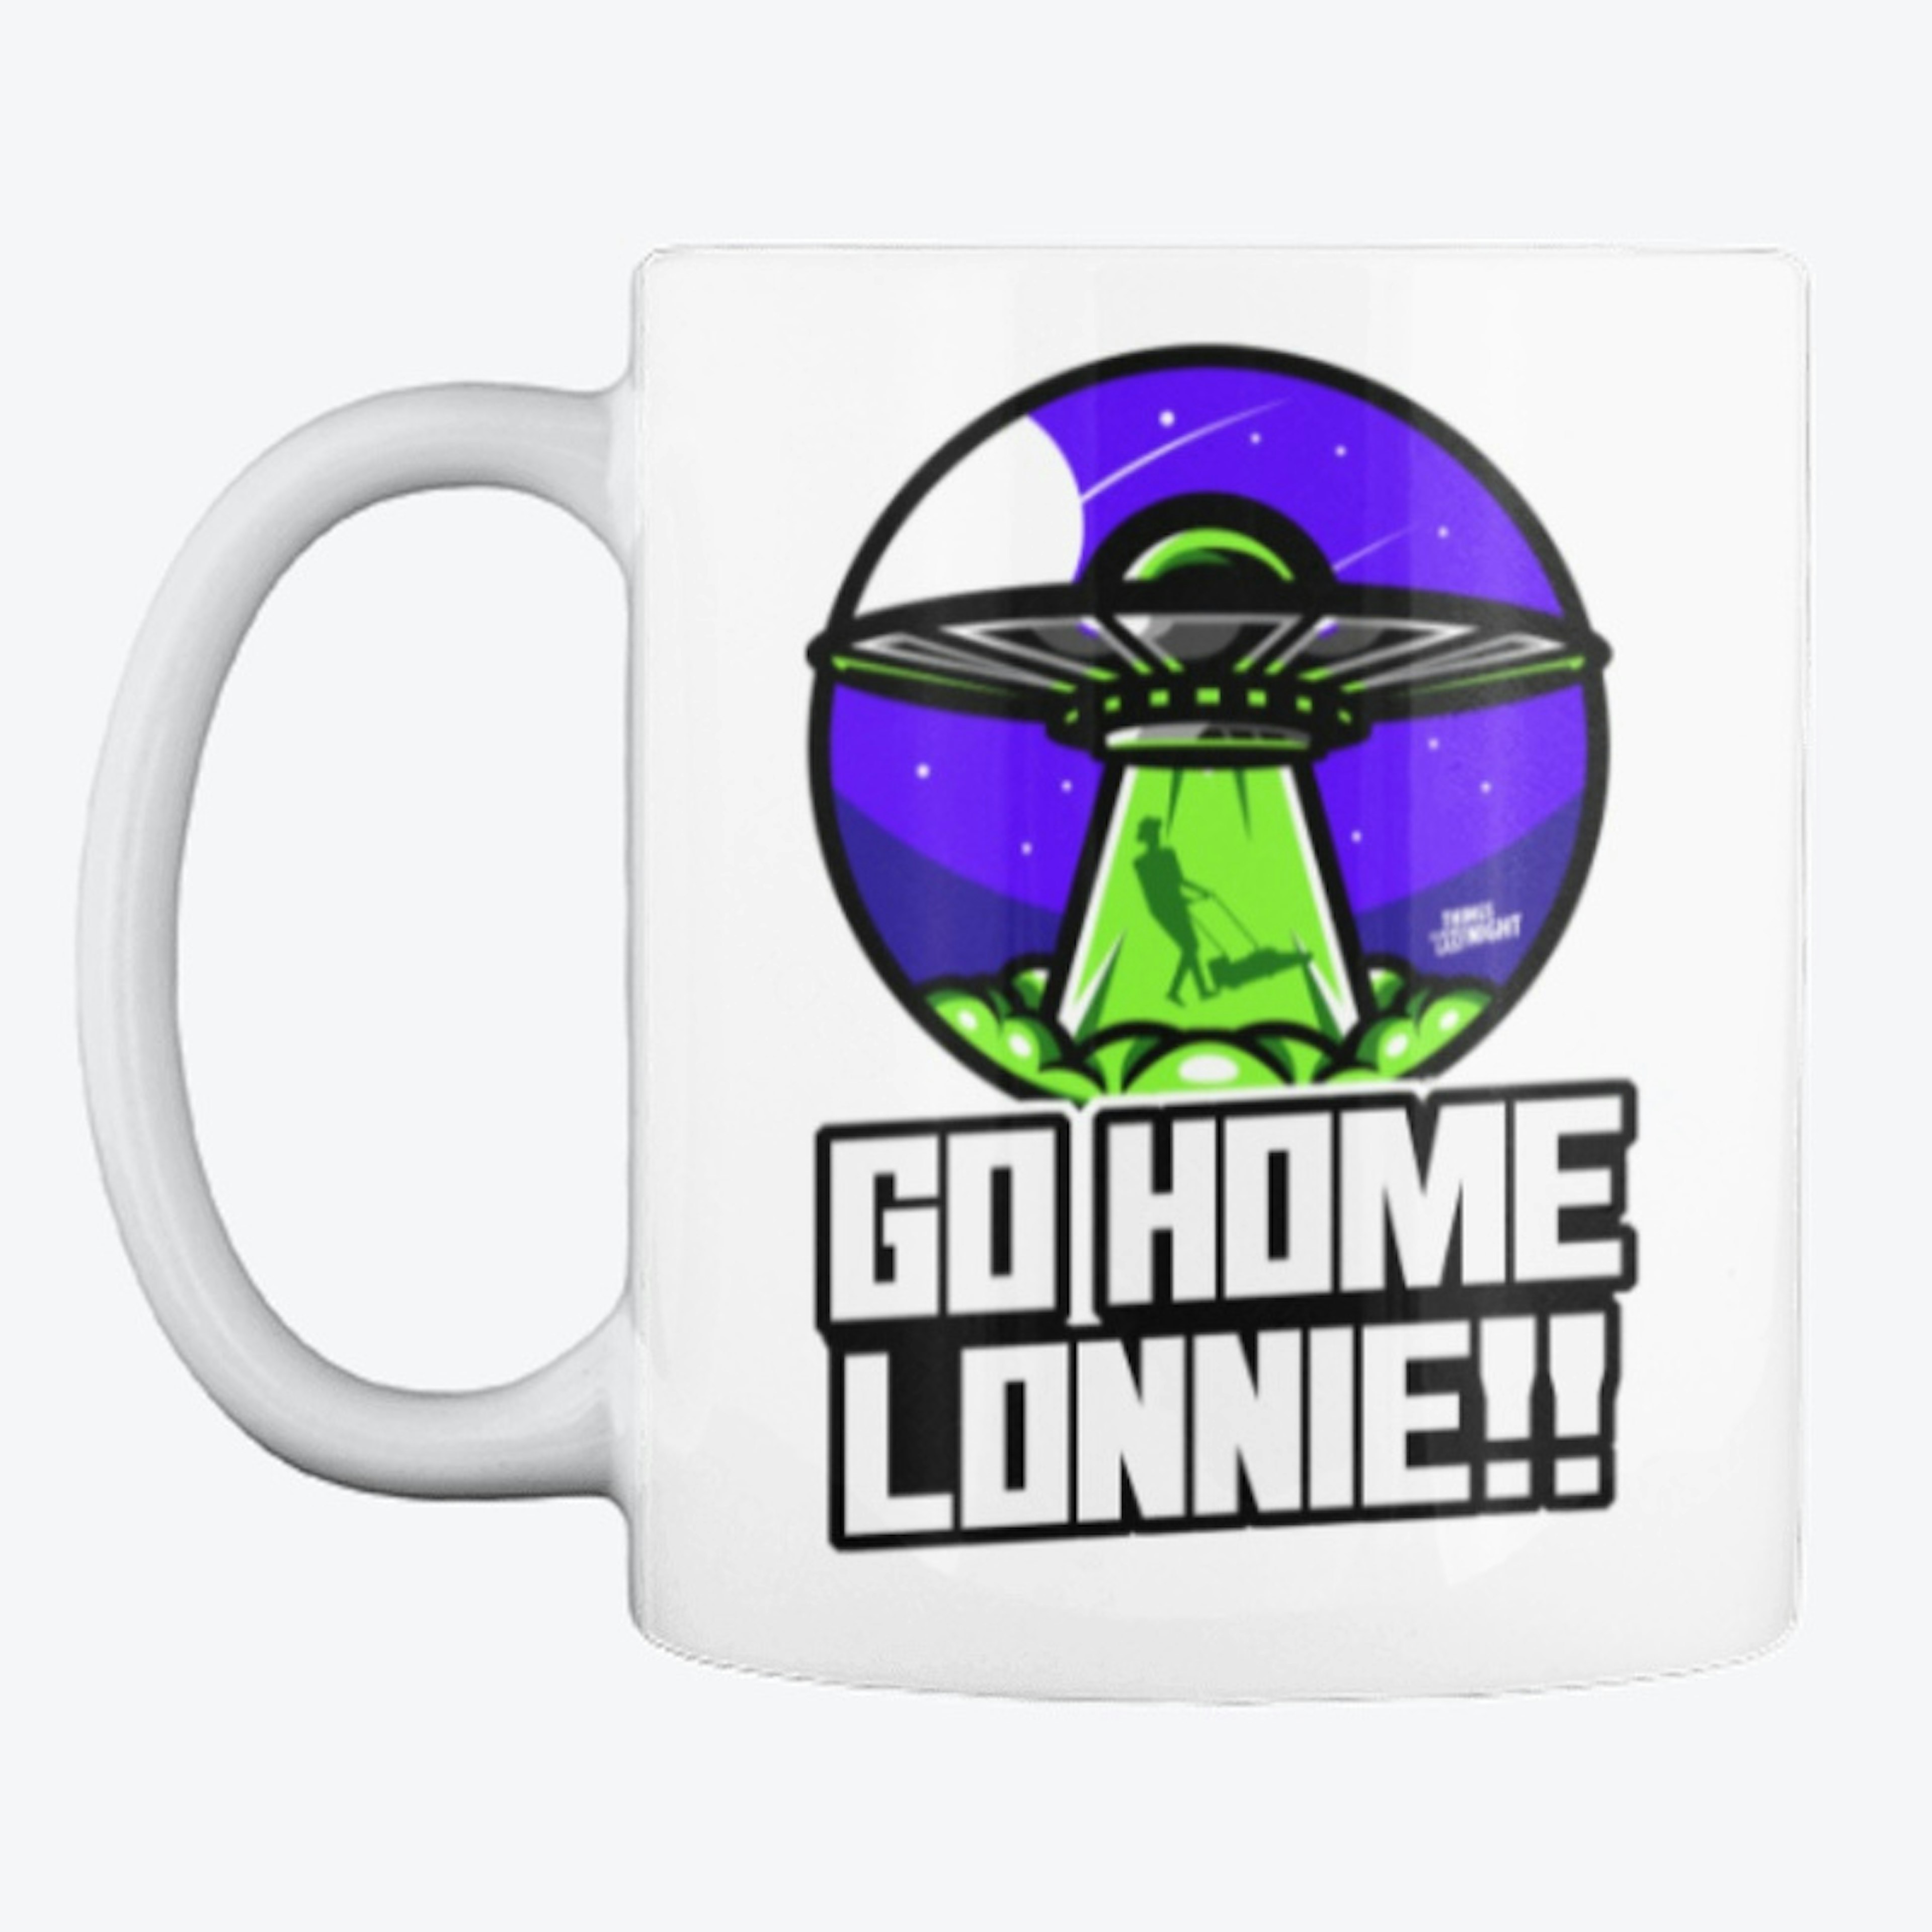 Go Home Lonnie